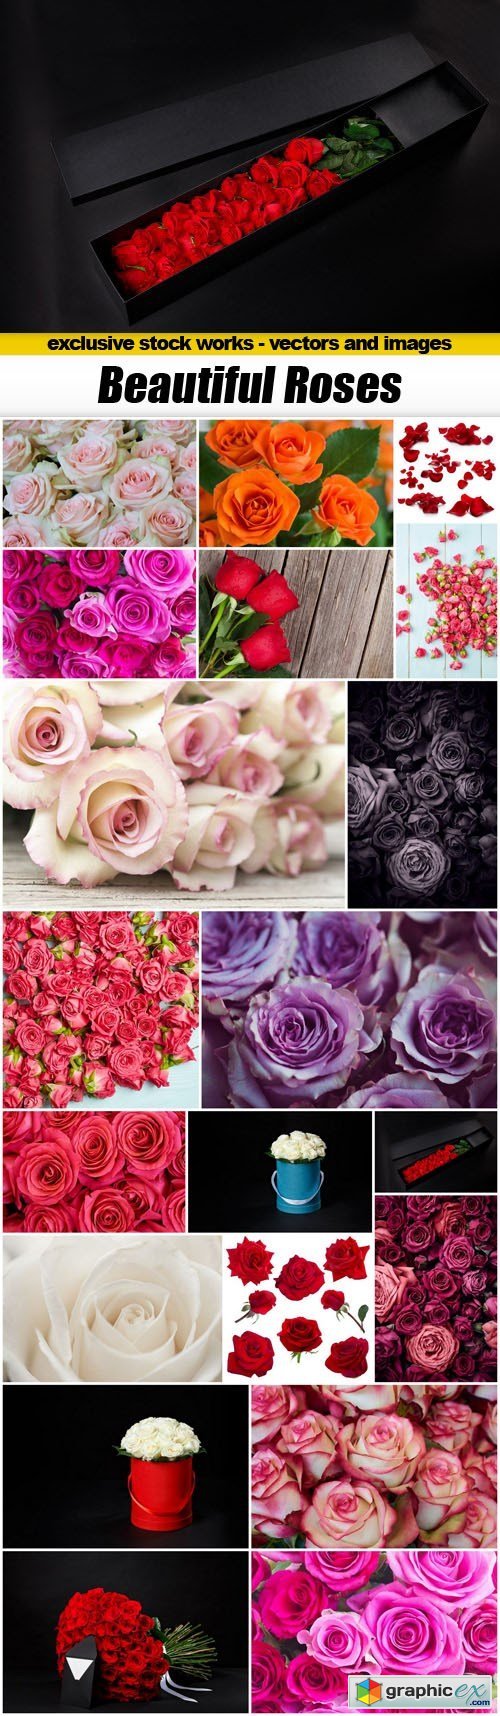 Beautiful Roses - 20xUHQ JPEG